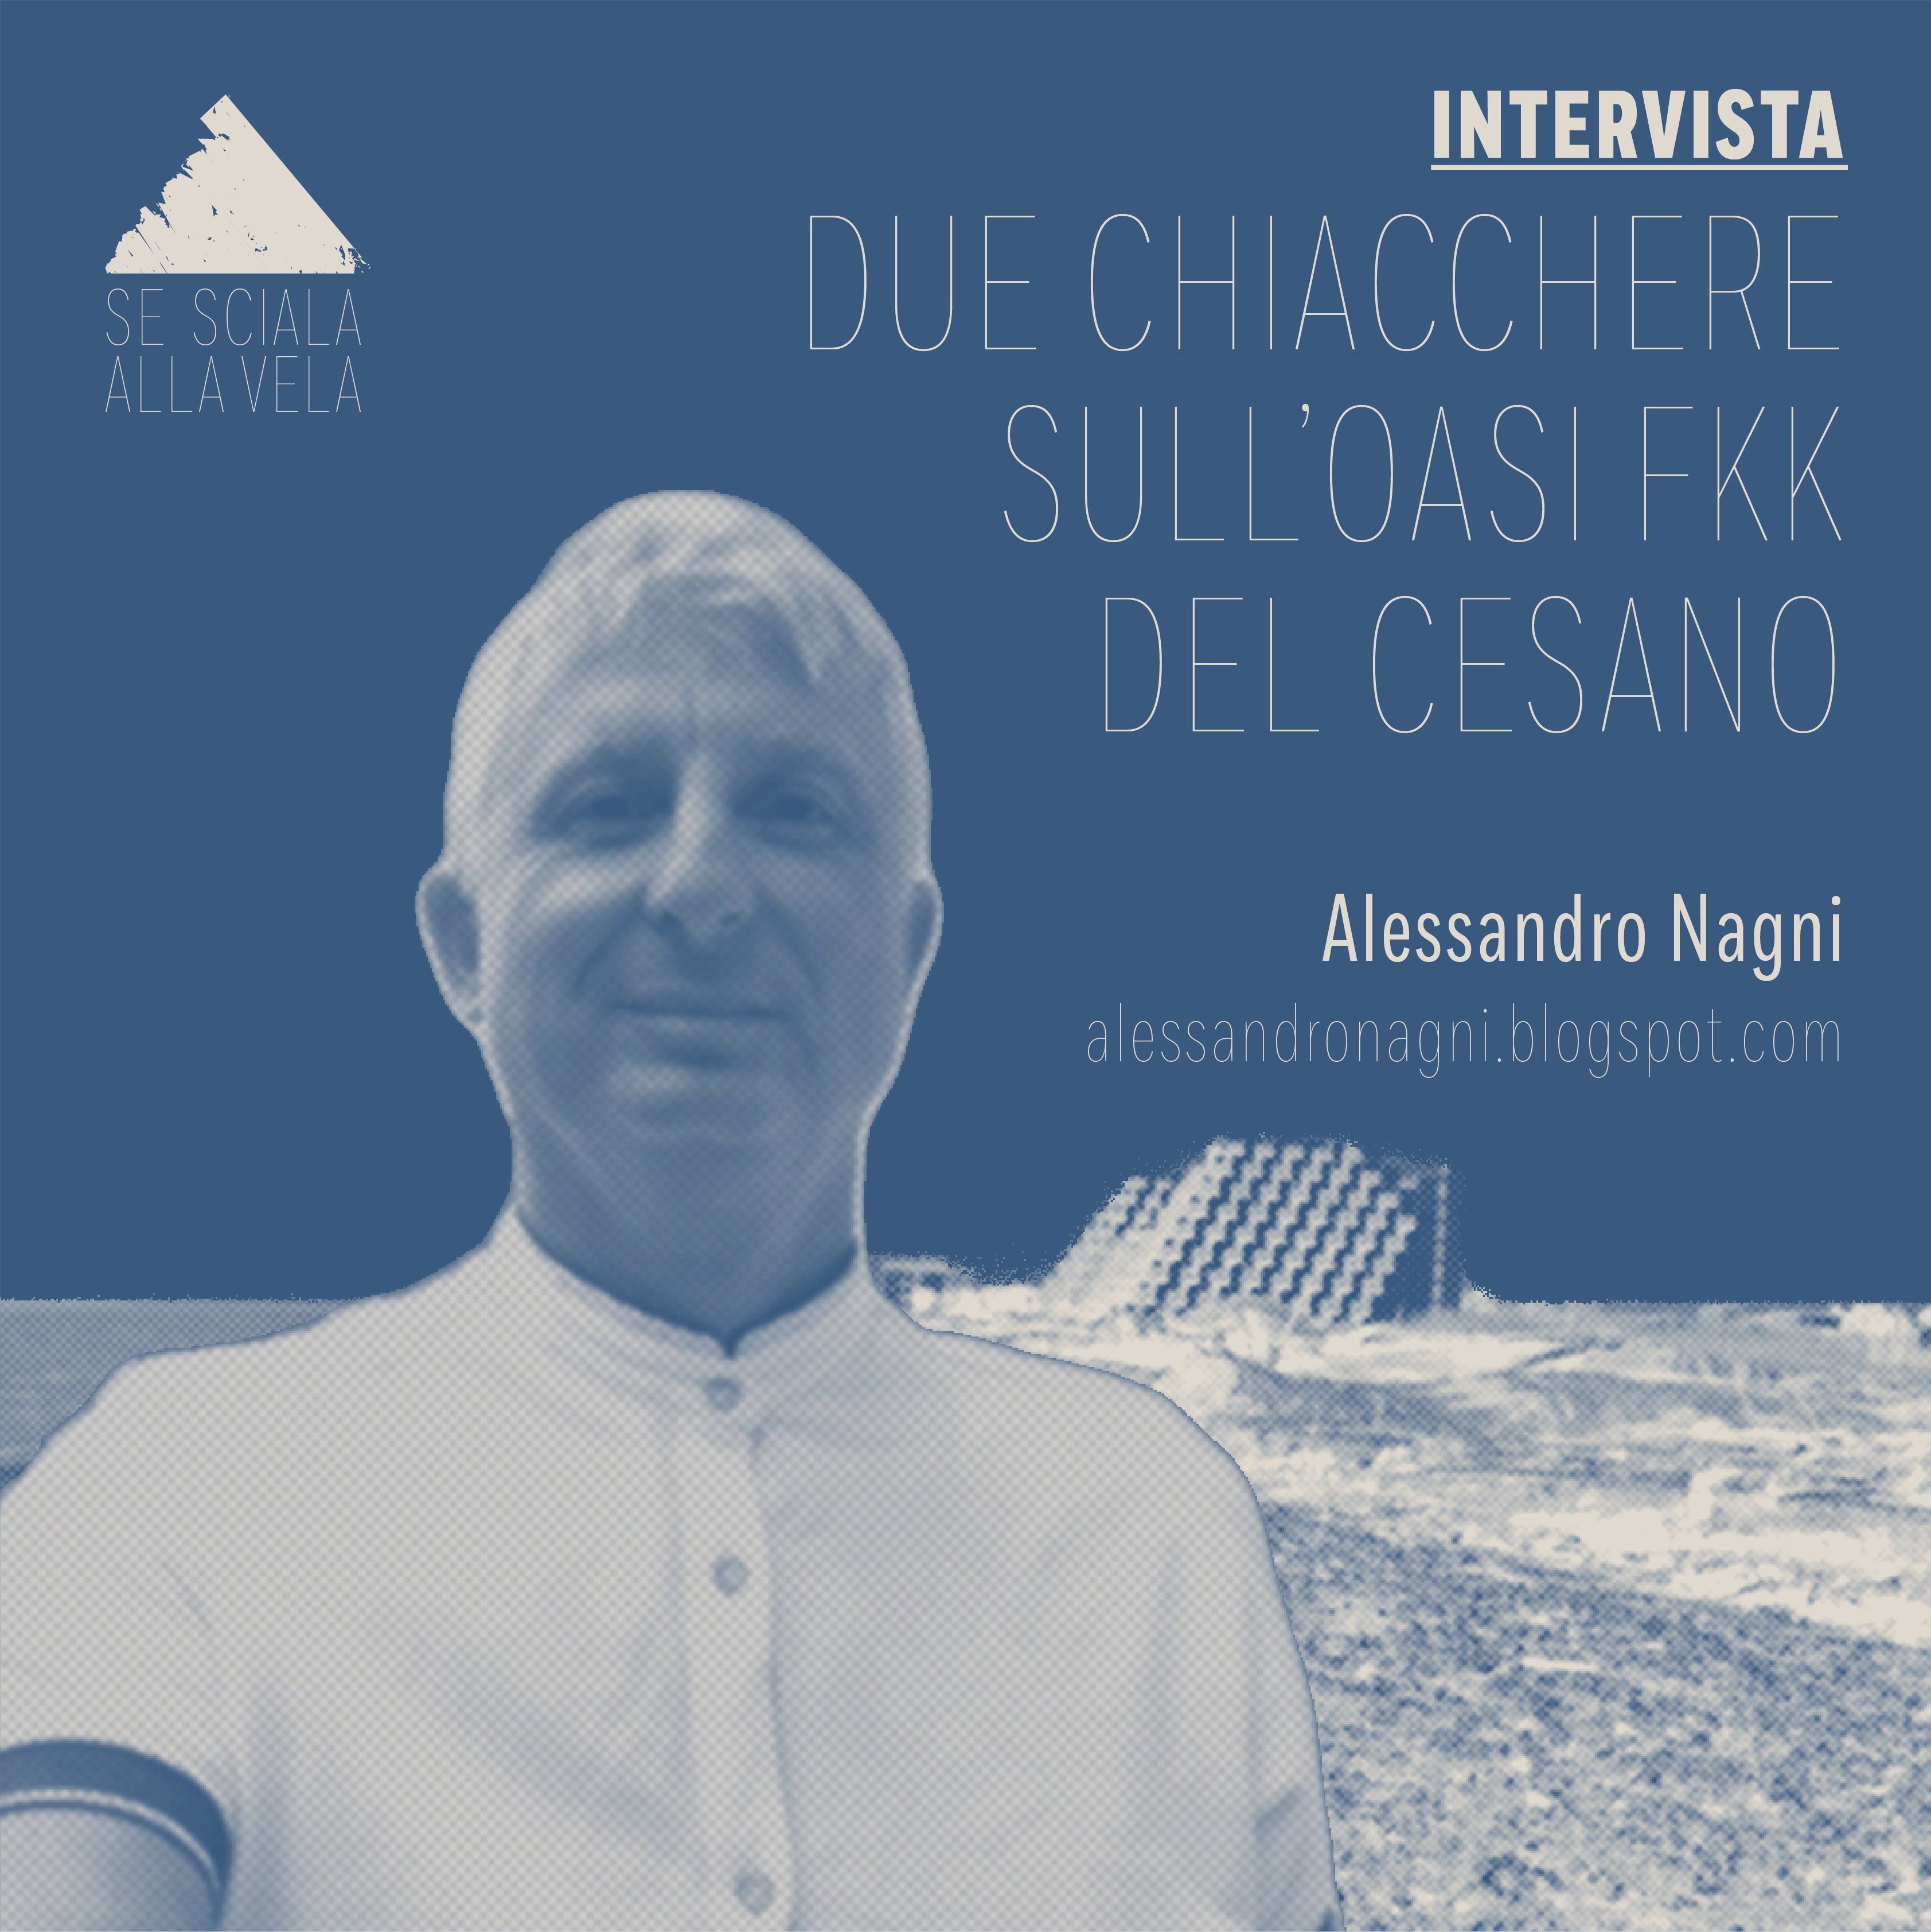 Tra multe e denunce sfiorate: due chiacchere sul Cesano con Alessandro Nagni